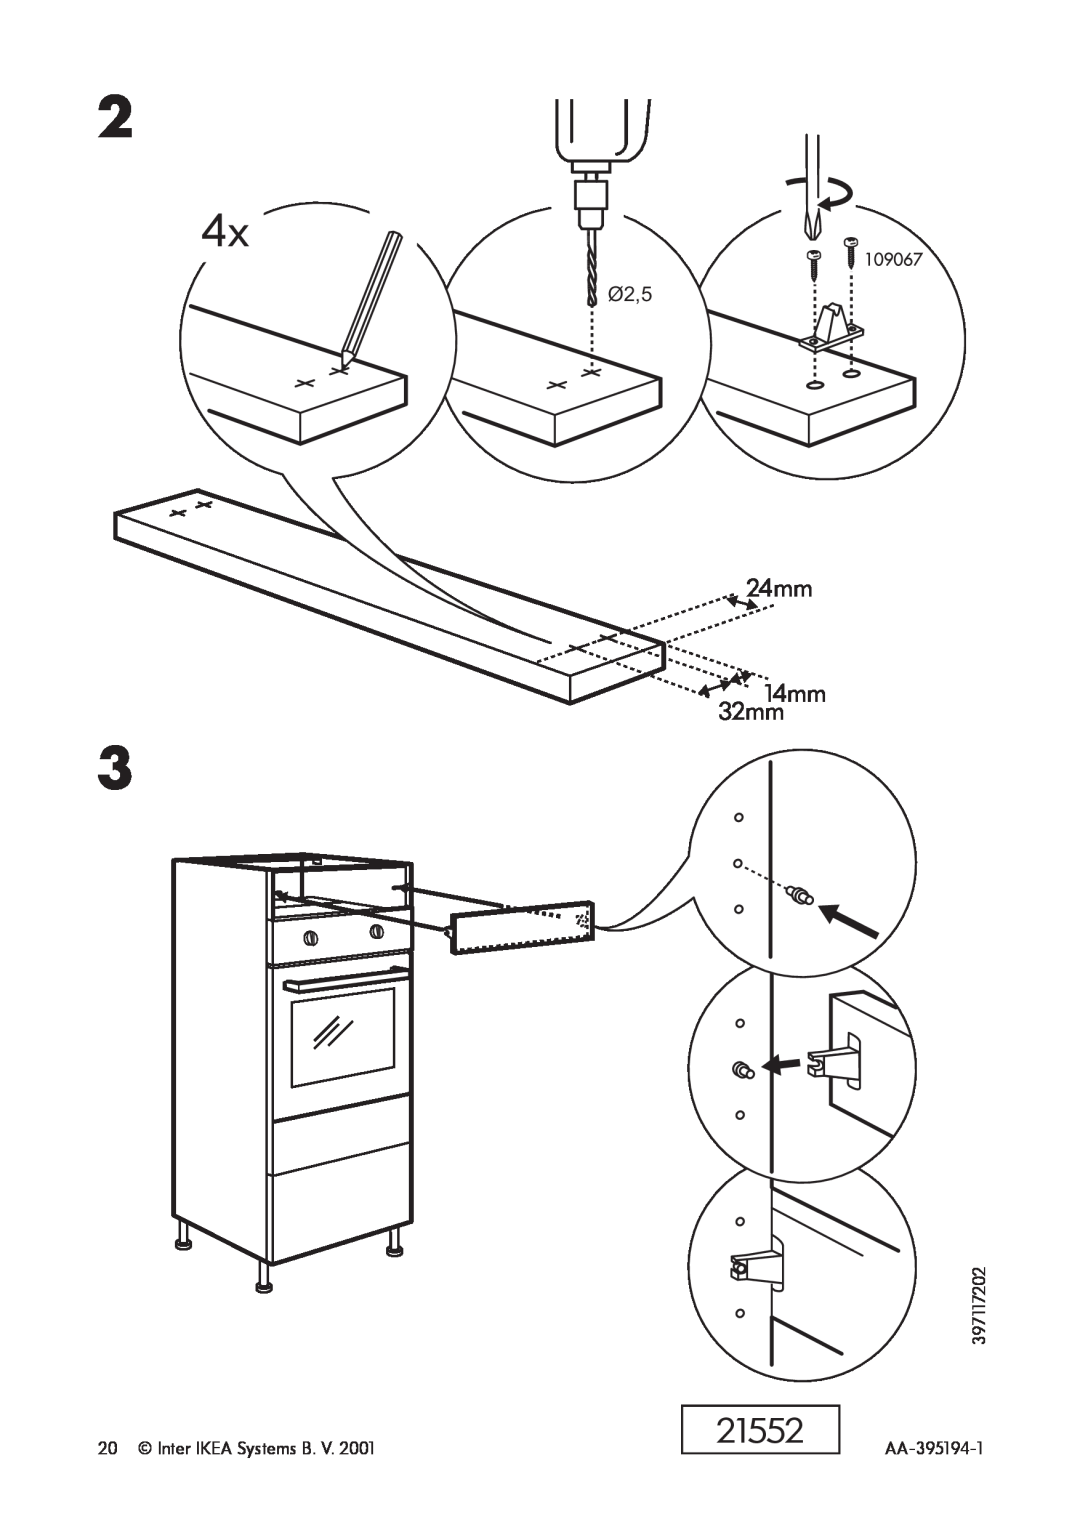 IKEA OV3 manual 24mm, 21552, 14mm 32mm, Inter IKEA Systems B, 397117202 AA-395194-1 